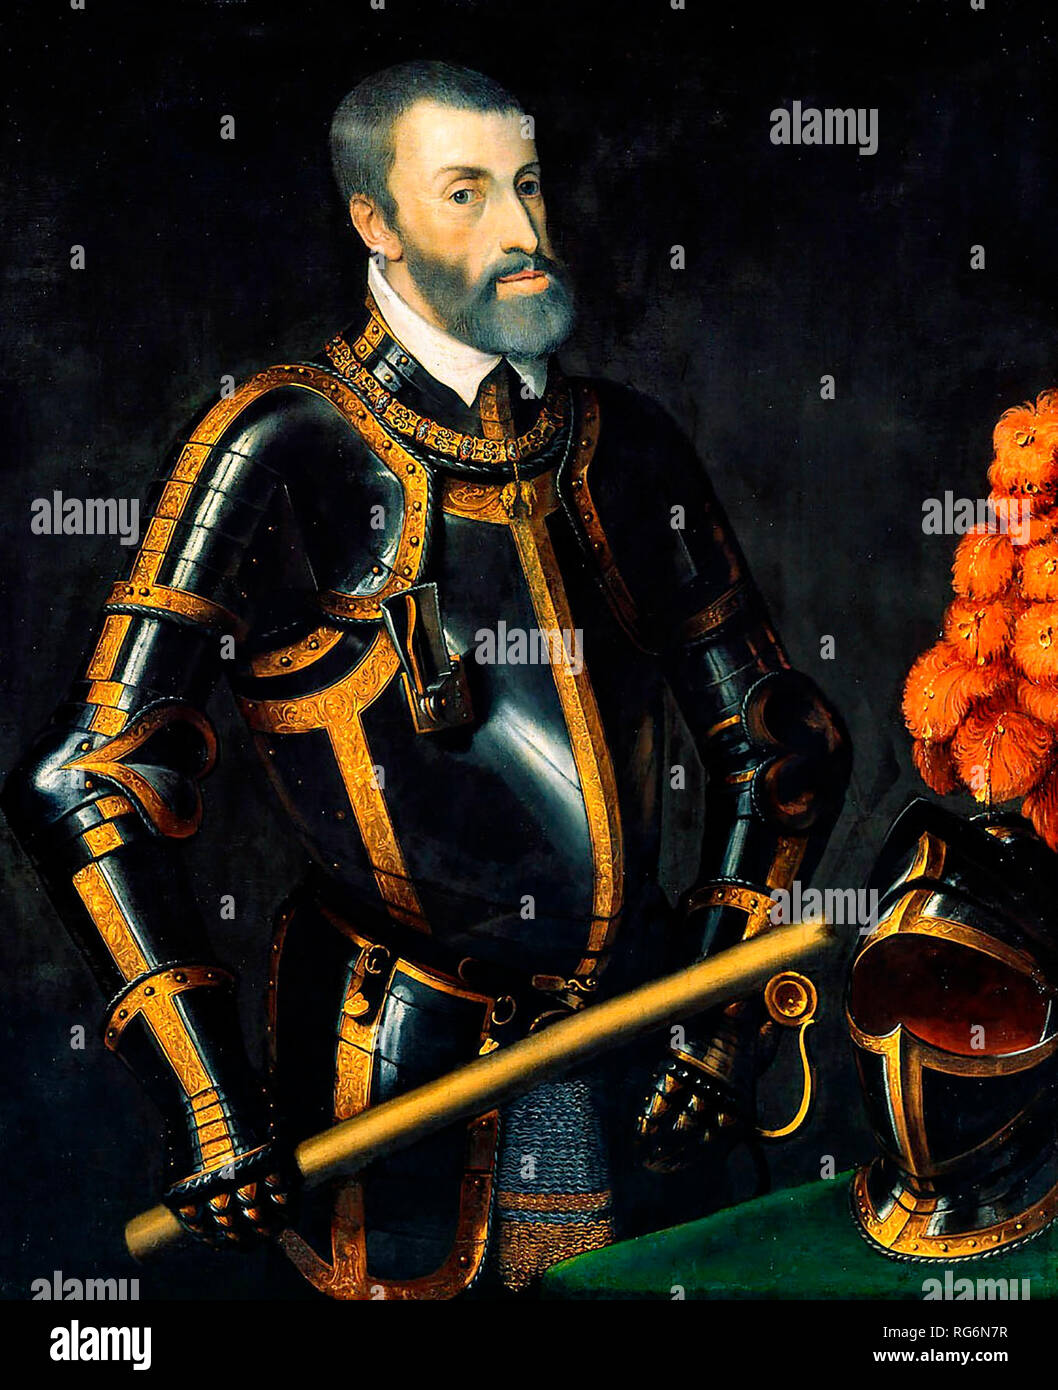 Eine ältere Karl V (Charles V) (auch als Don Carlos I. von Spanien bekannt), Herrscher des Heiligen Römischen Reiches - Tizian, ca. 1550 Stockfoto